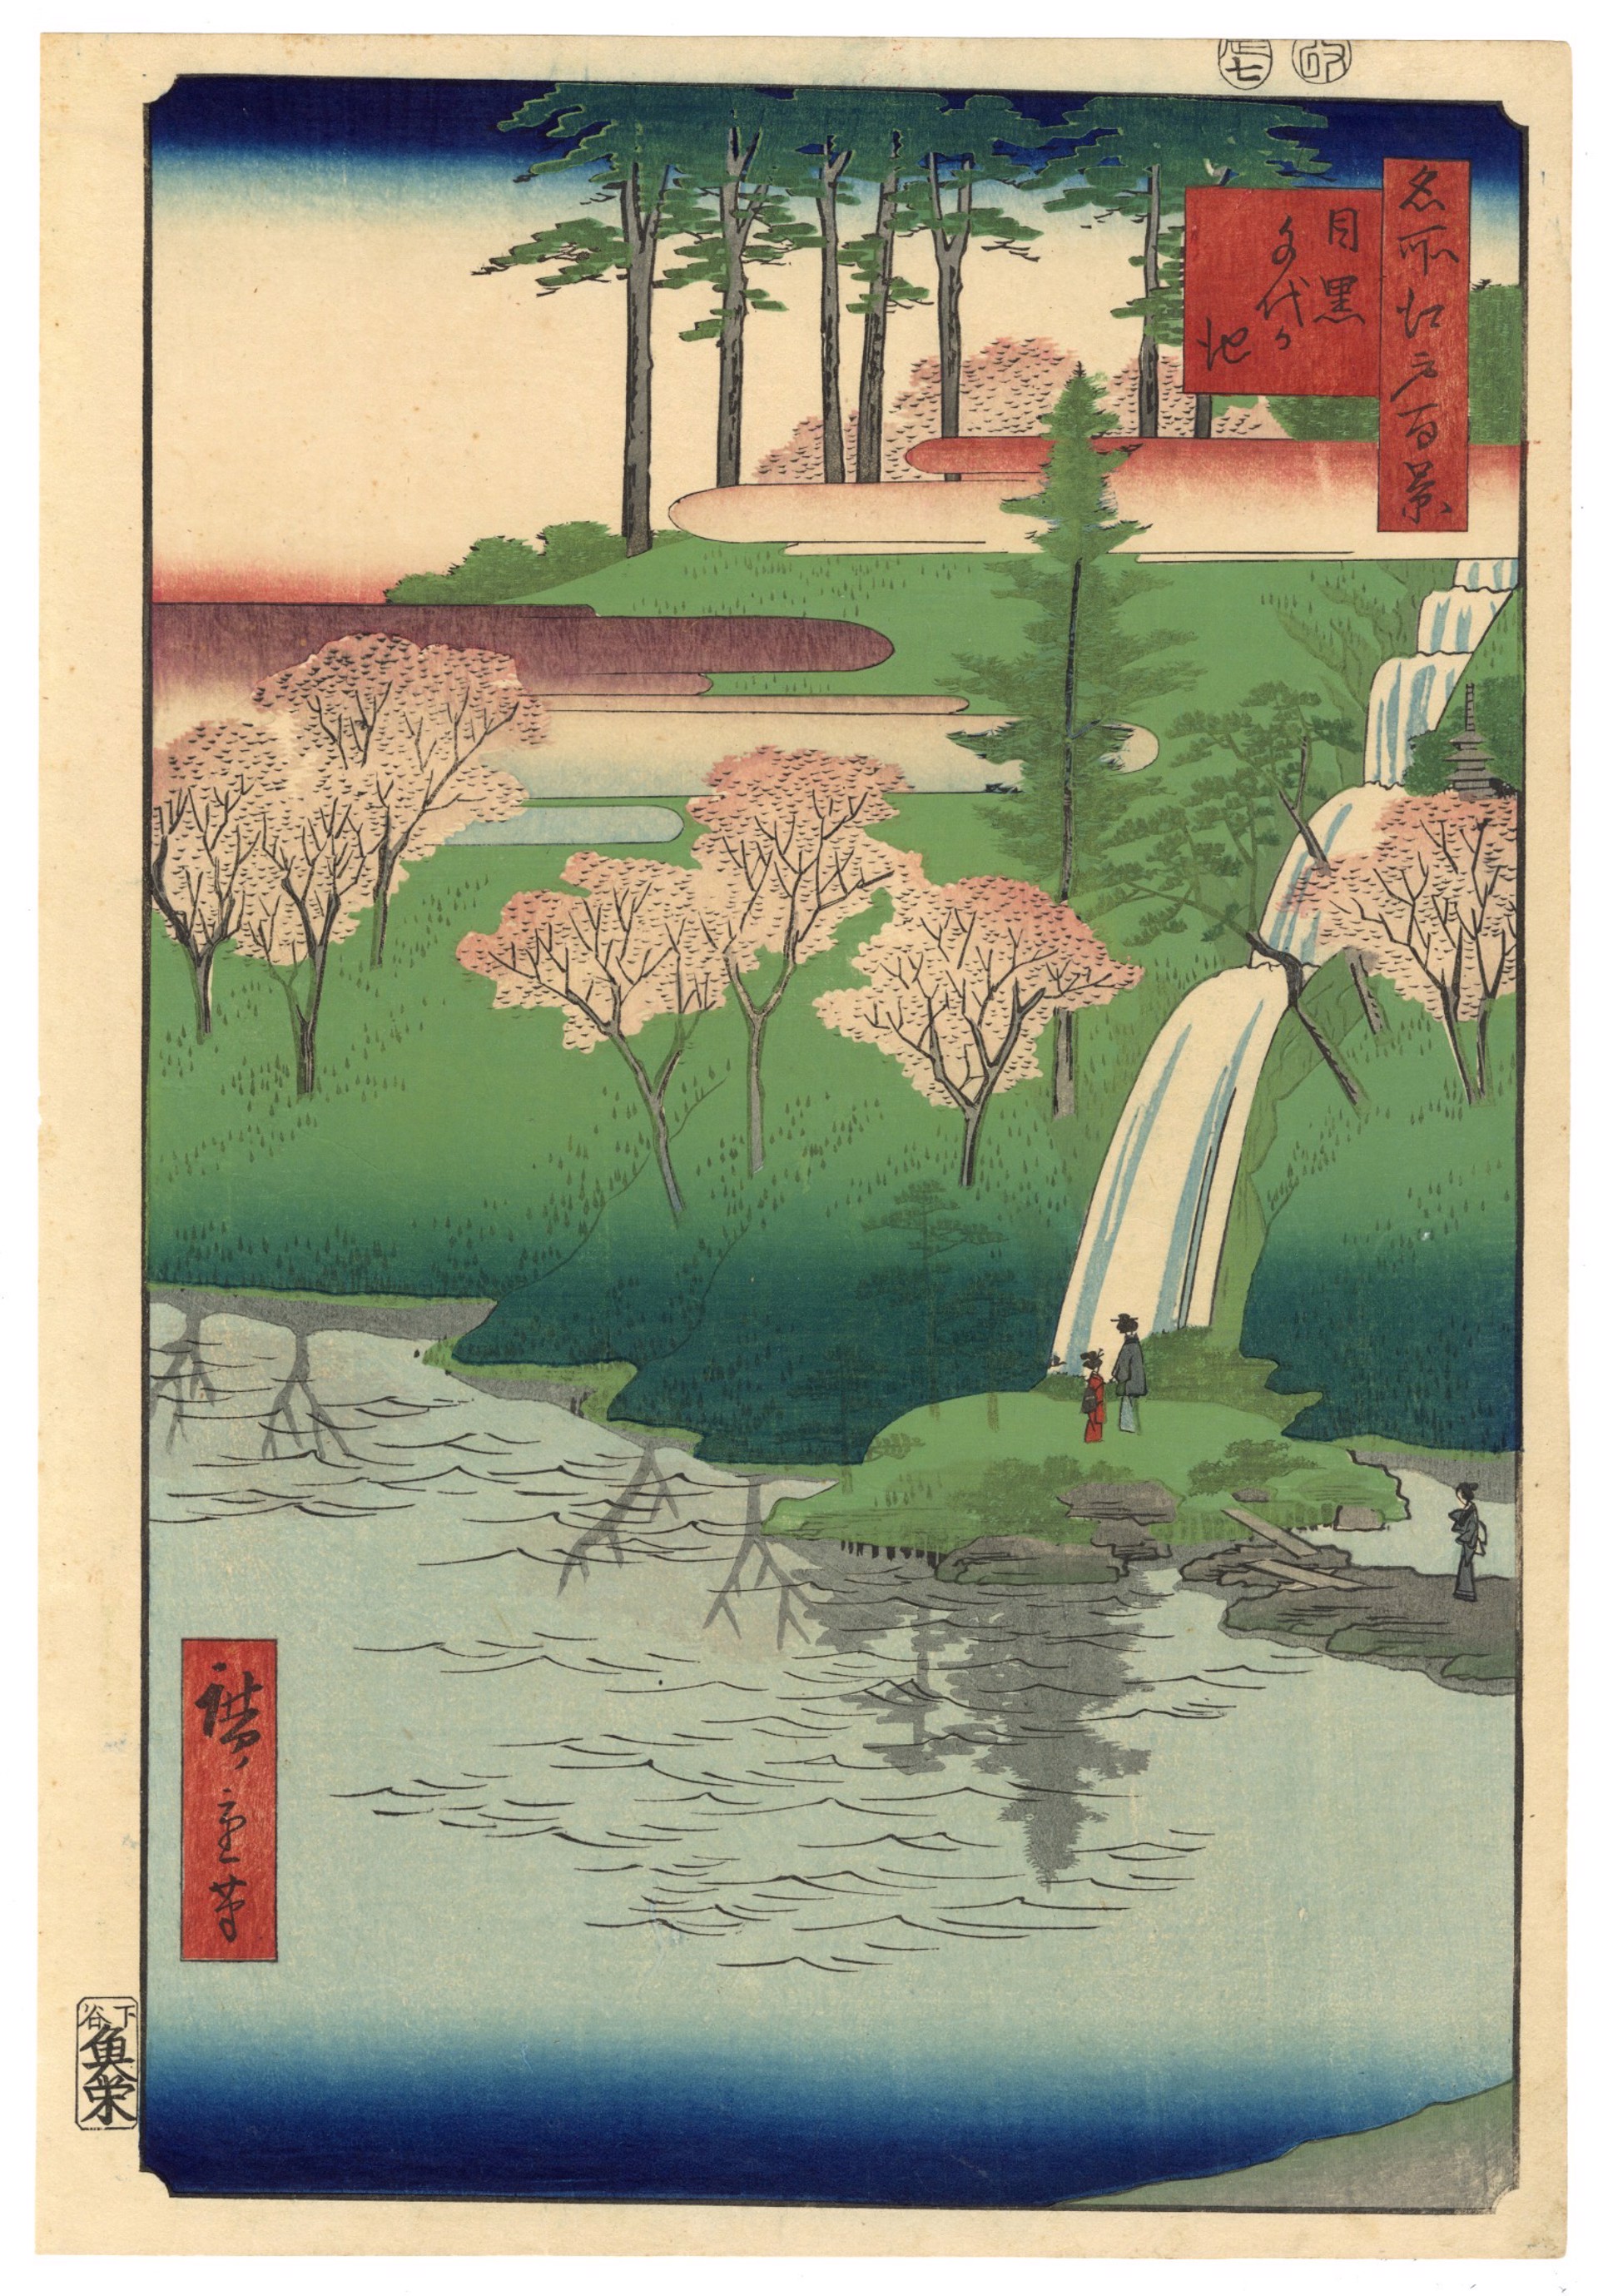 Chiyo Pond at Meguro by Hiroshige